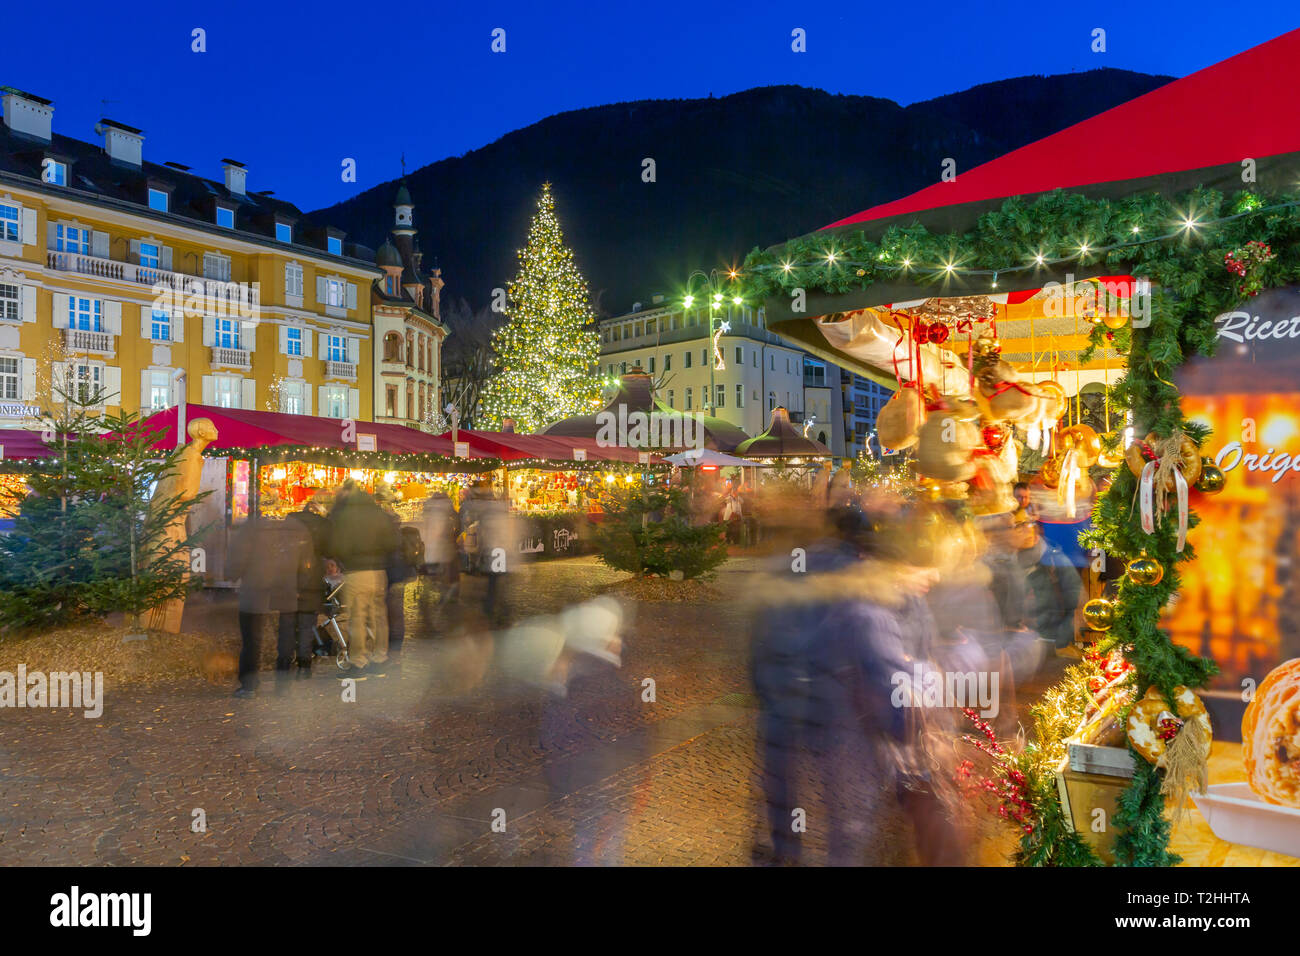 Kunden Weihnachtsmarkt auf der Piazza Walther, Bozen, Italien, Europa Stockfoto